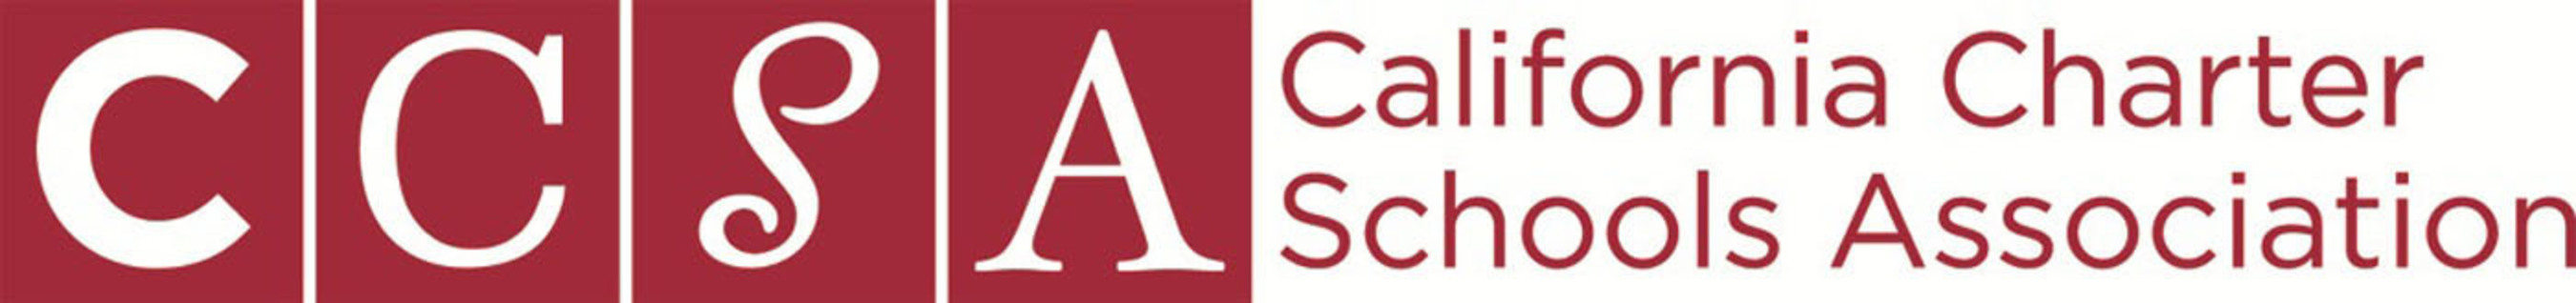 California Charter Schools Association (CCSA) Logo